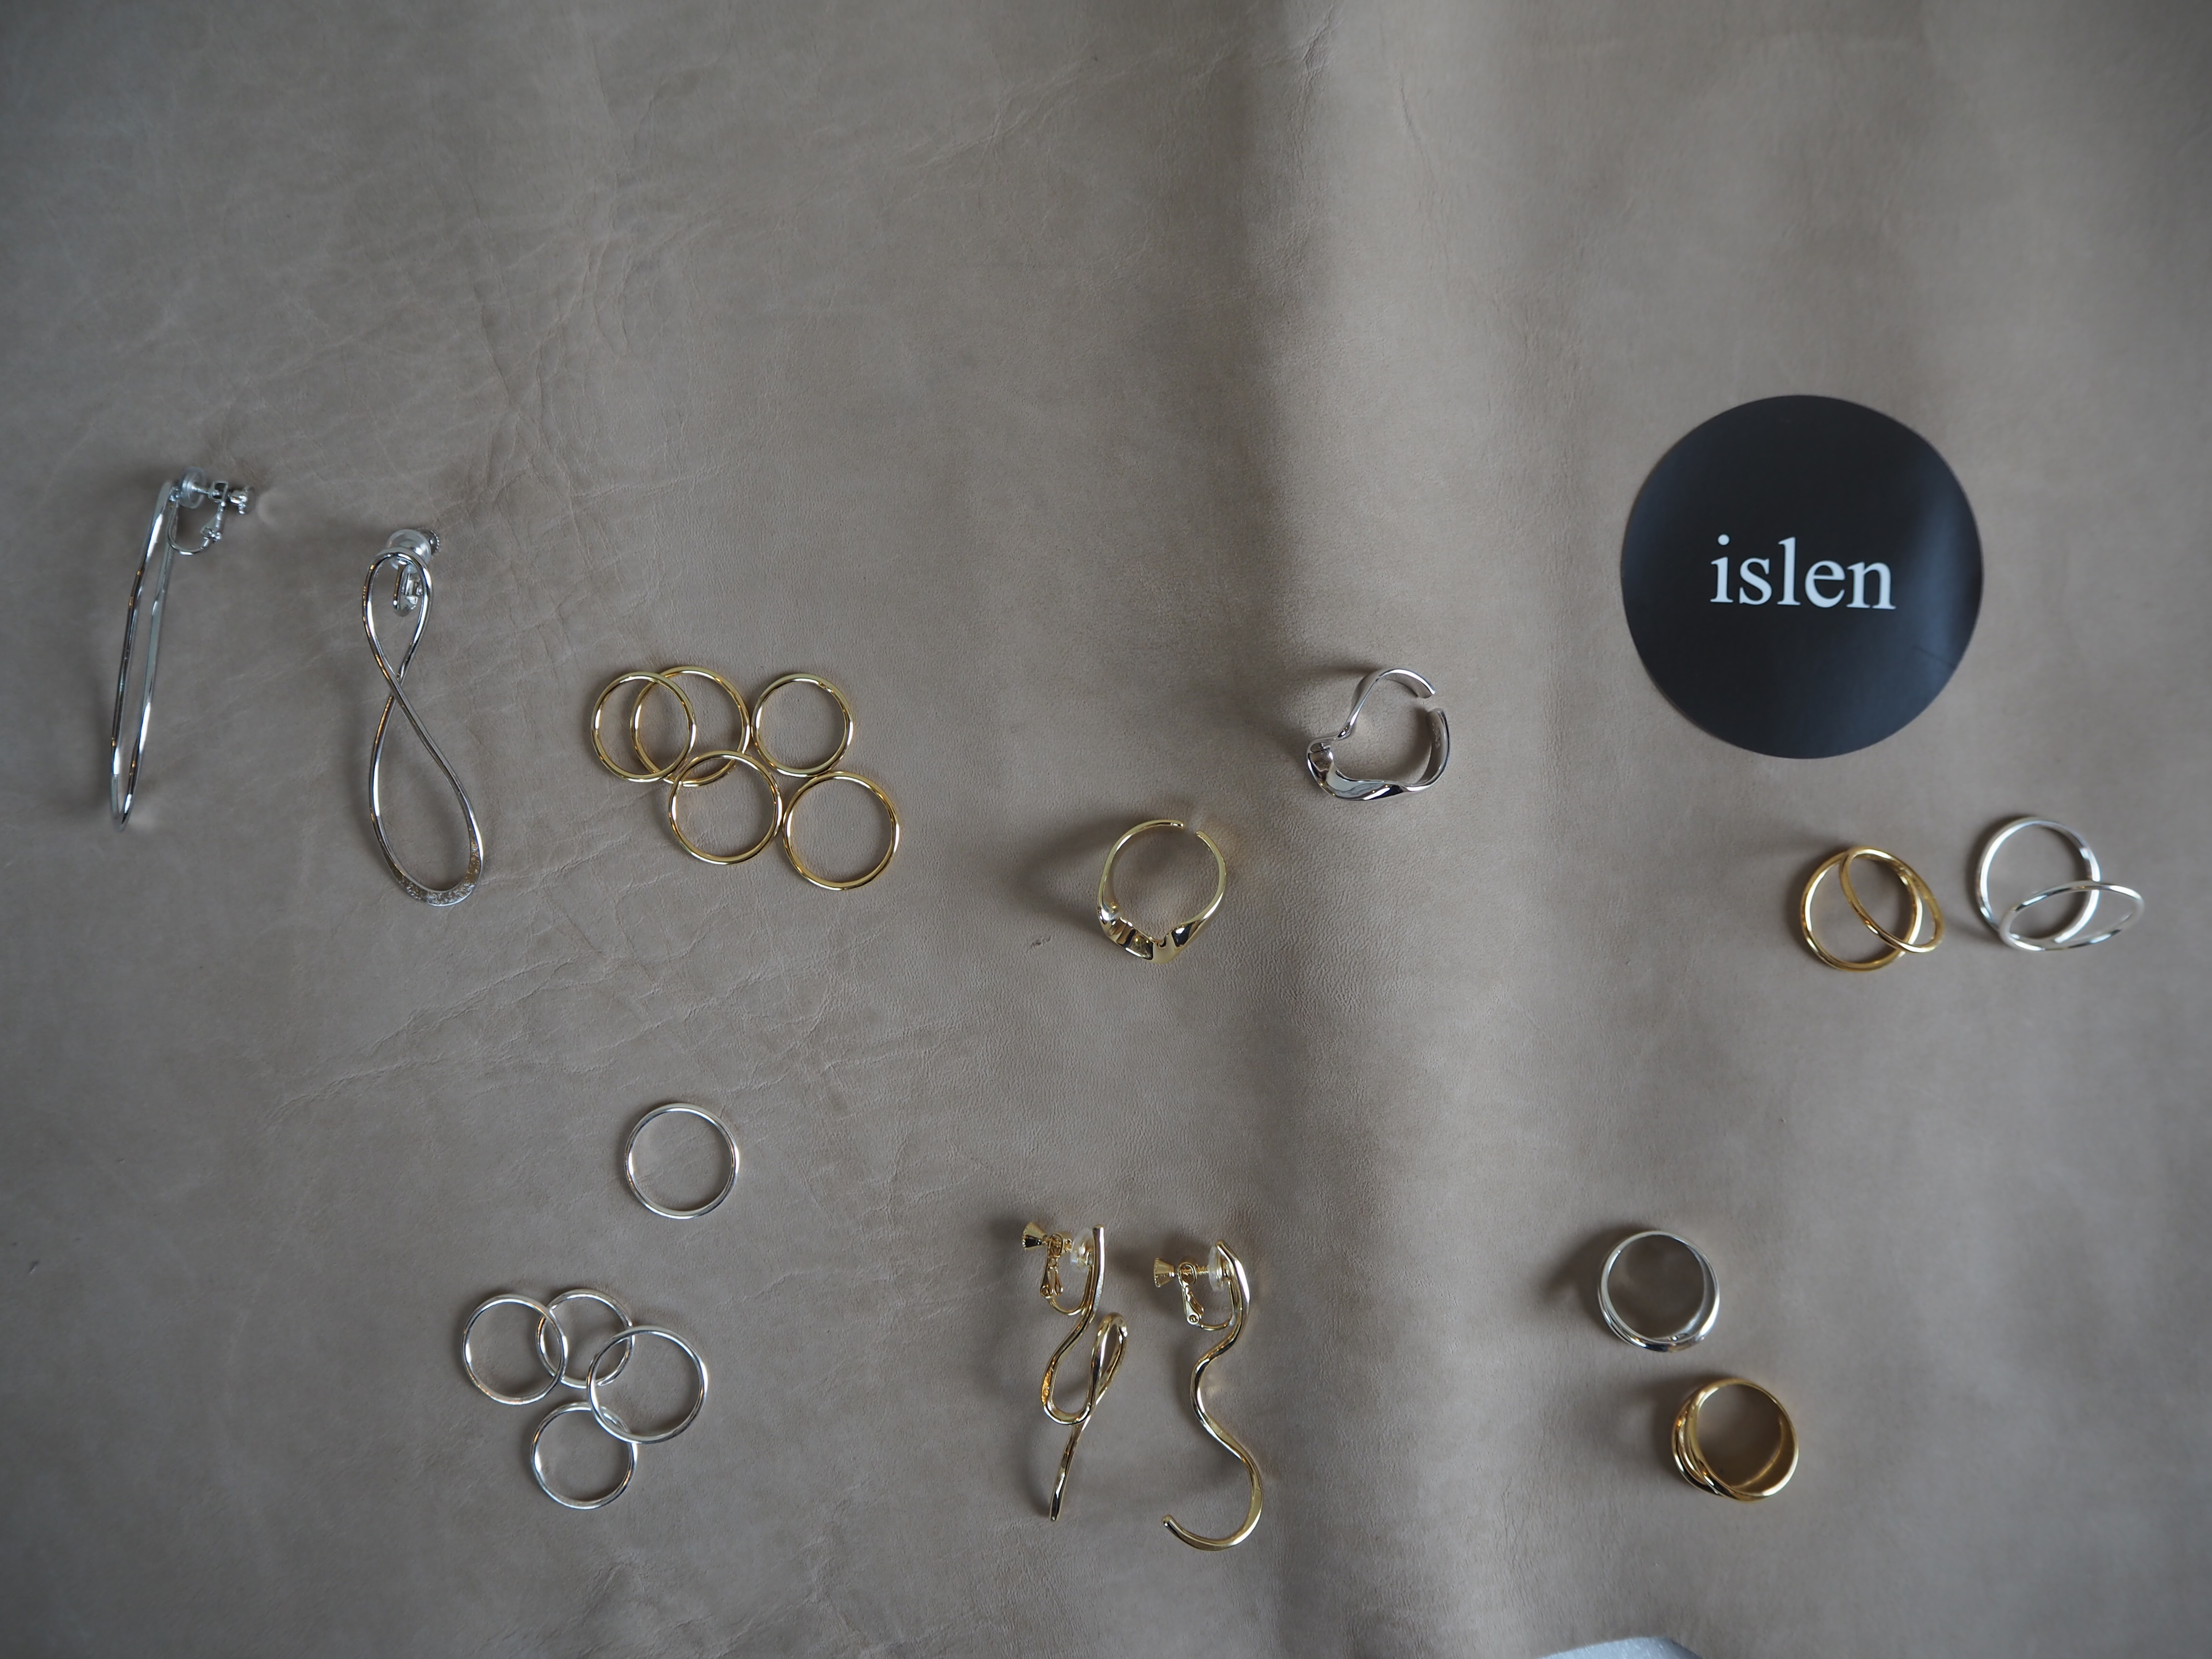 【 islen 】新ブランド”イスレン” silver・18金アイテムが揃います